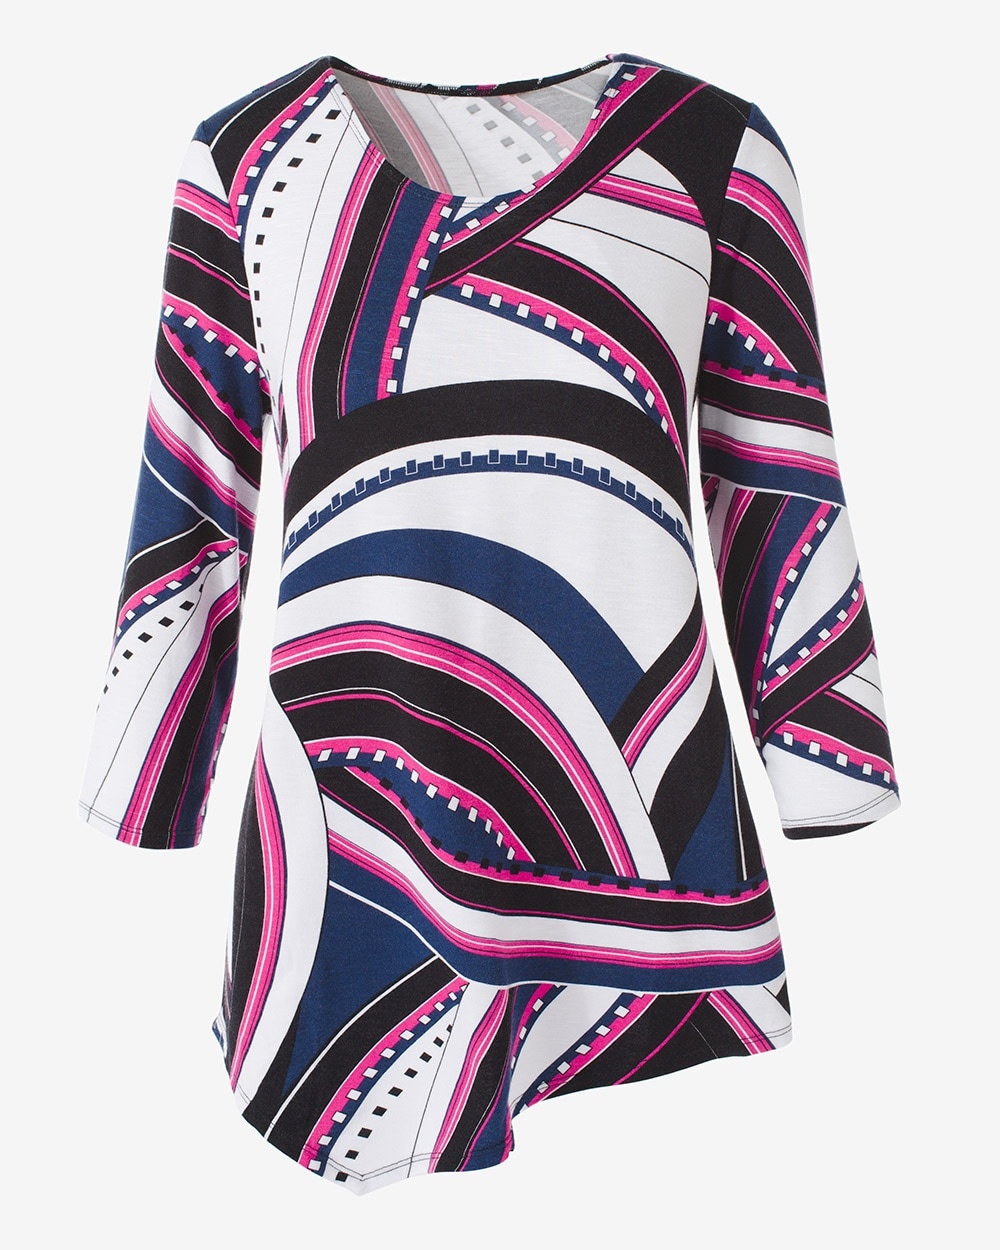 Easywear Zanzibar Rhythm Asymmetrical 3/4-Sleeve Top